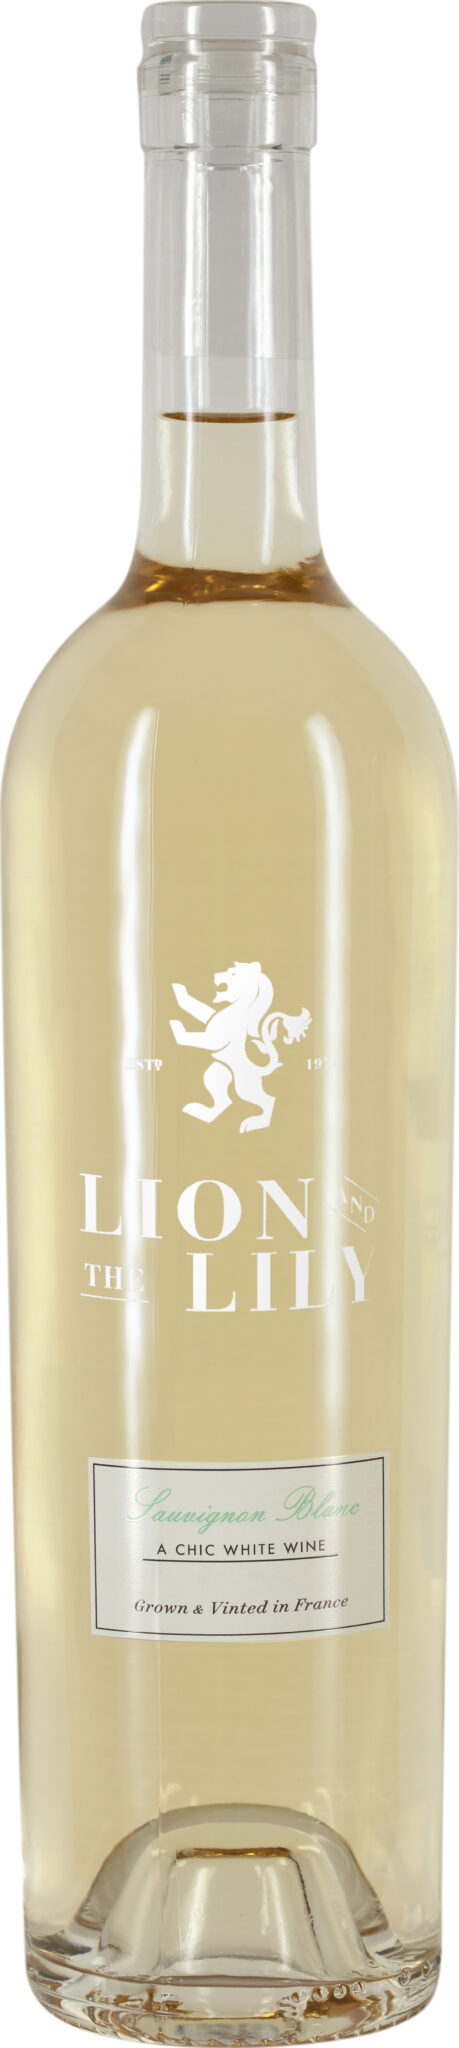 Lion & the Lily, Sauvignon Blanc Bordeaux AOP